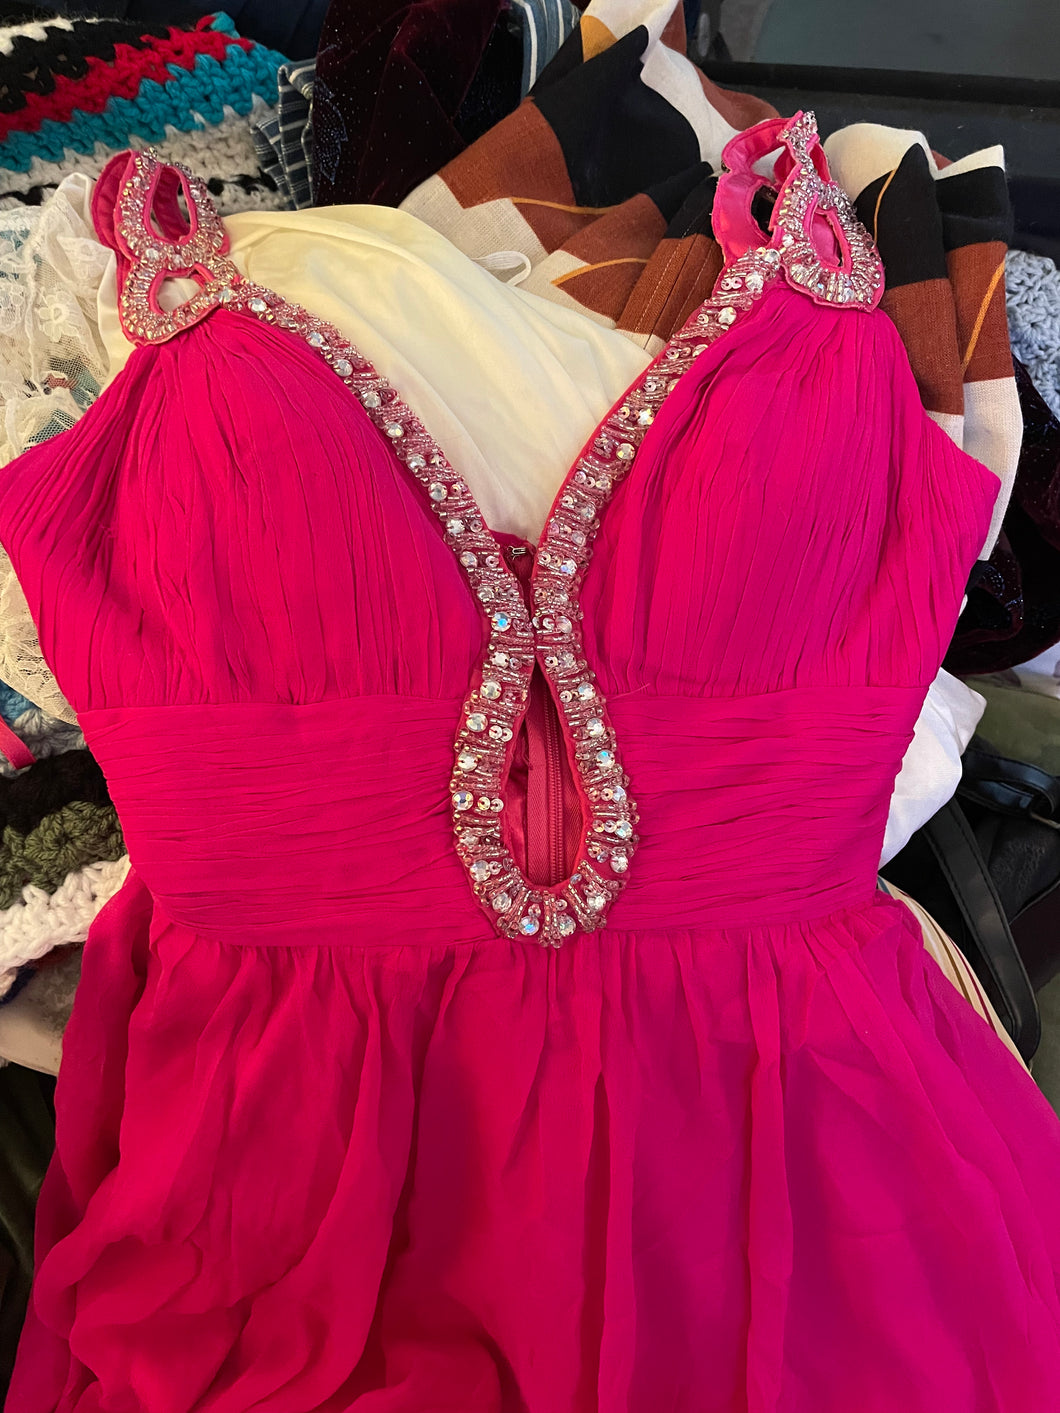 It’s a JOVANI Hot Pink Barbie Dress